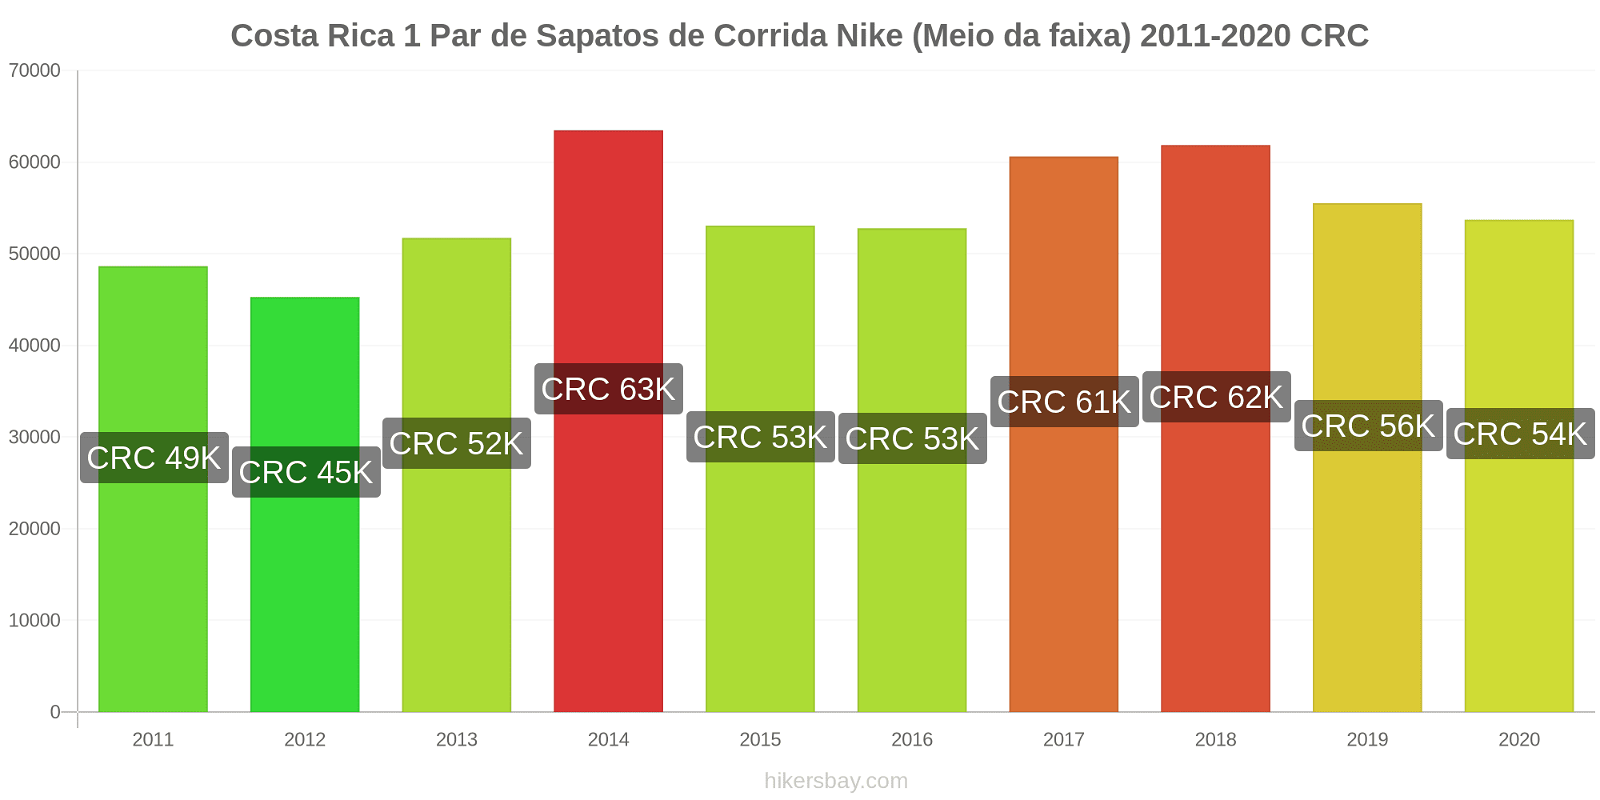 Costa Rica variação de preço 1 par de tênis Nike (mid-range) hikersbay.com